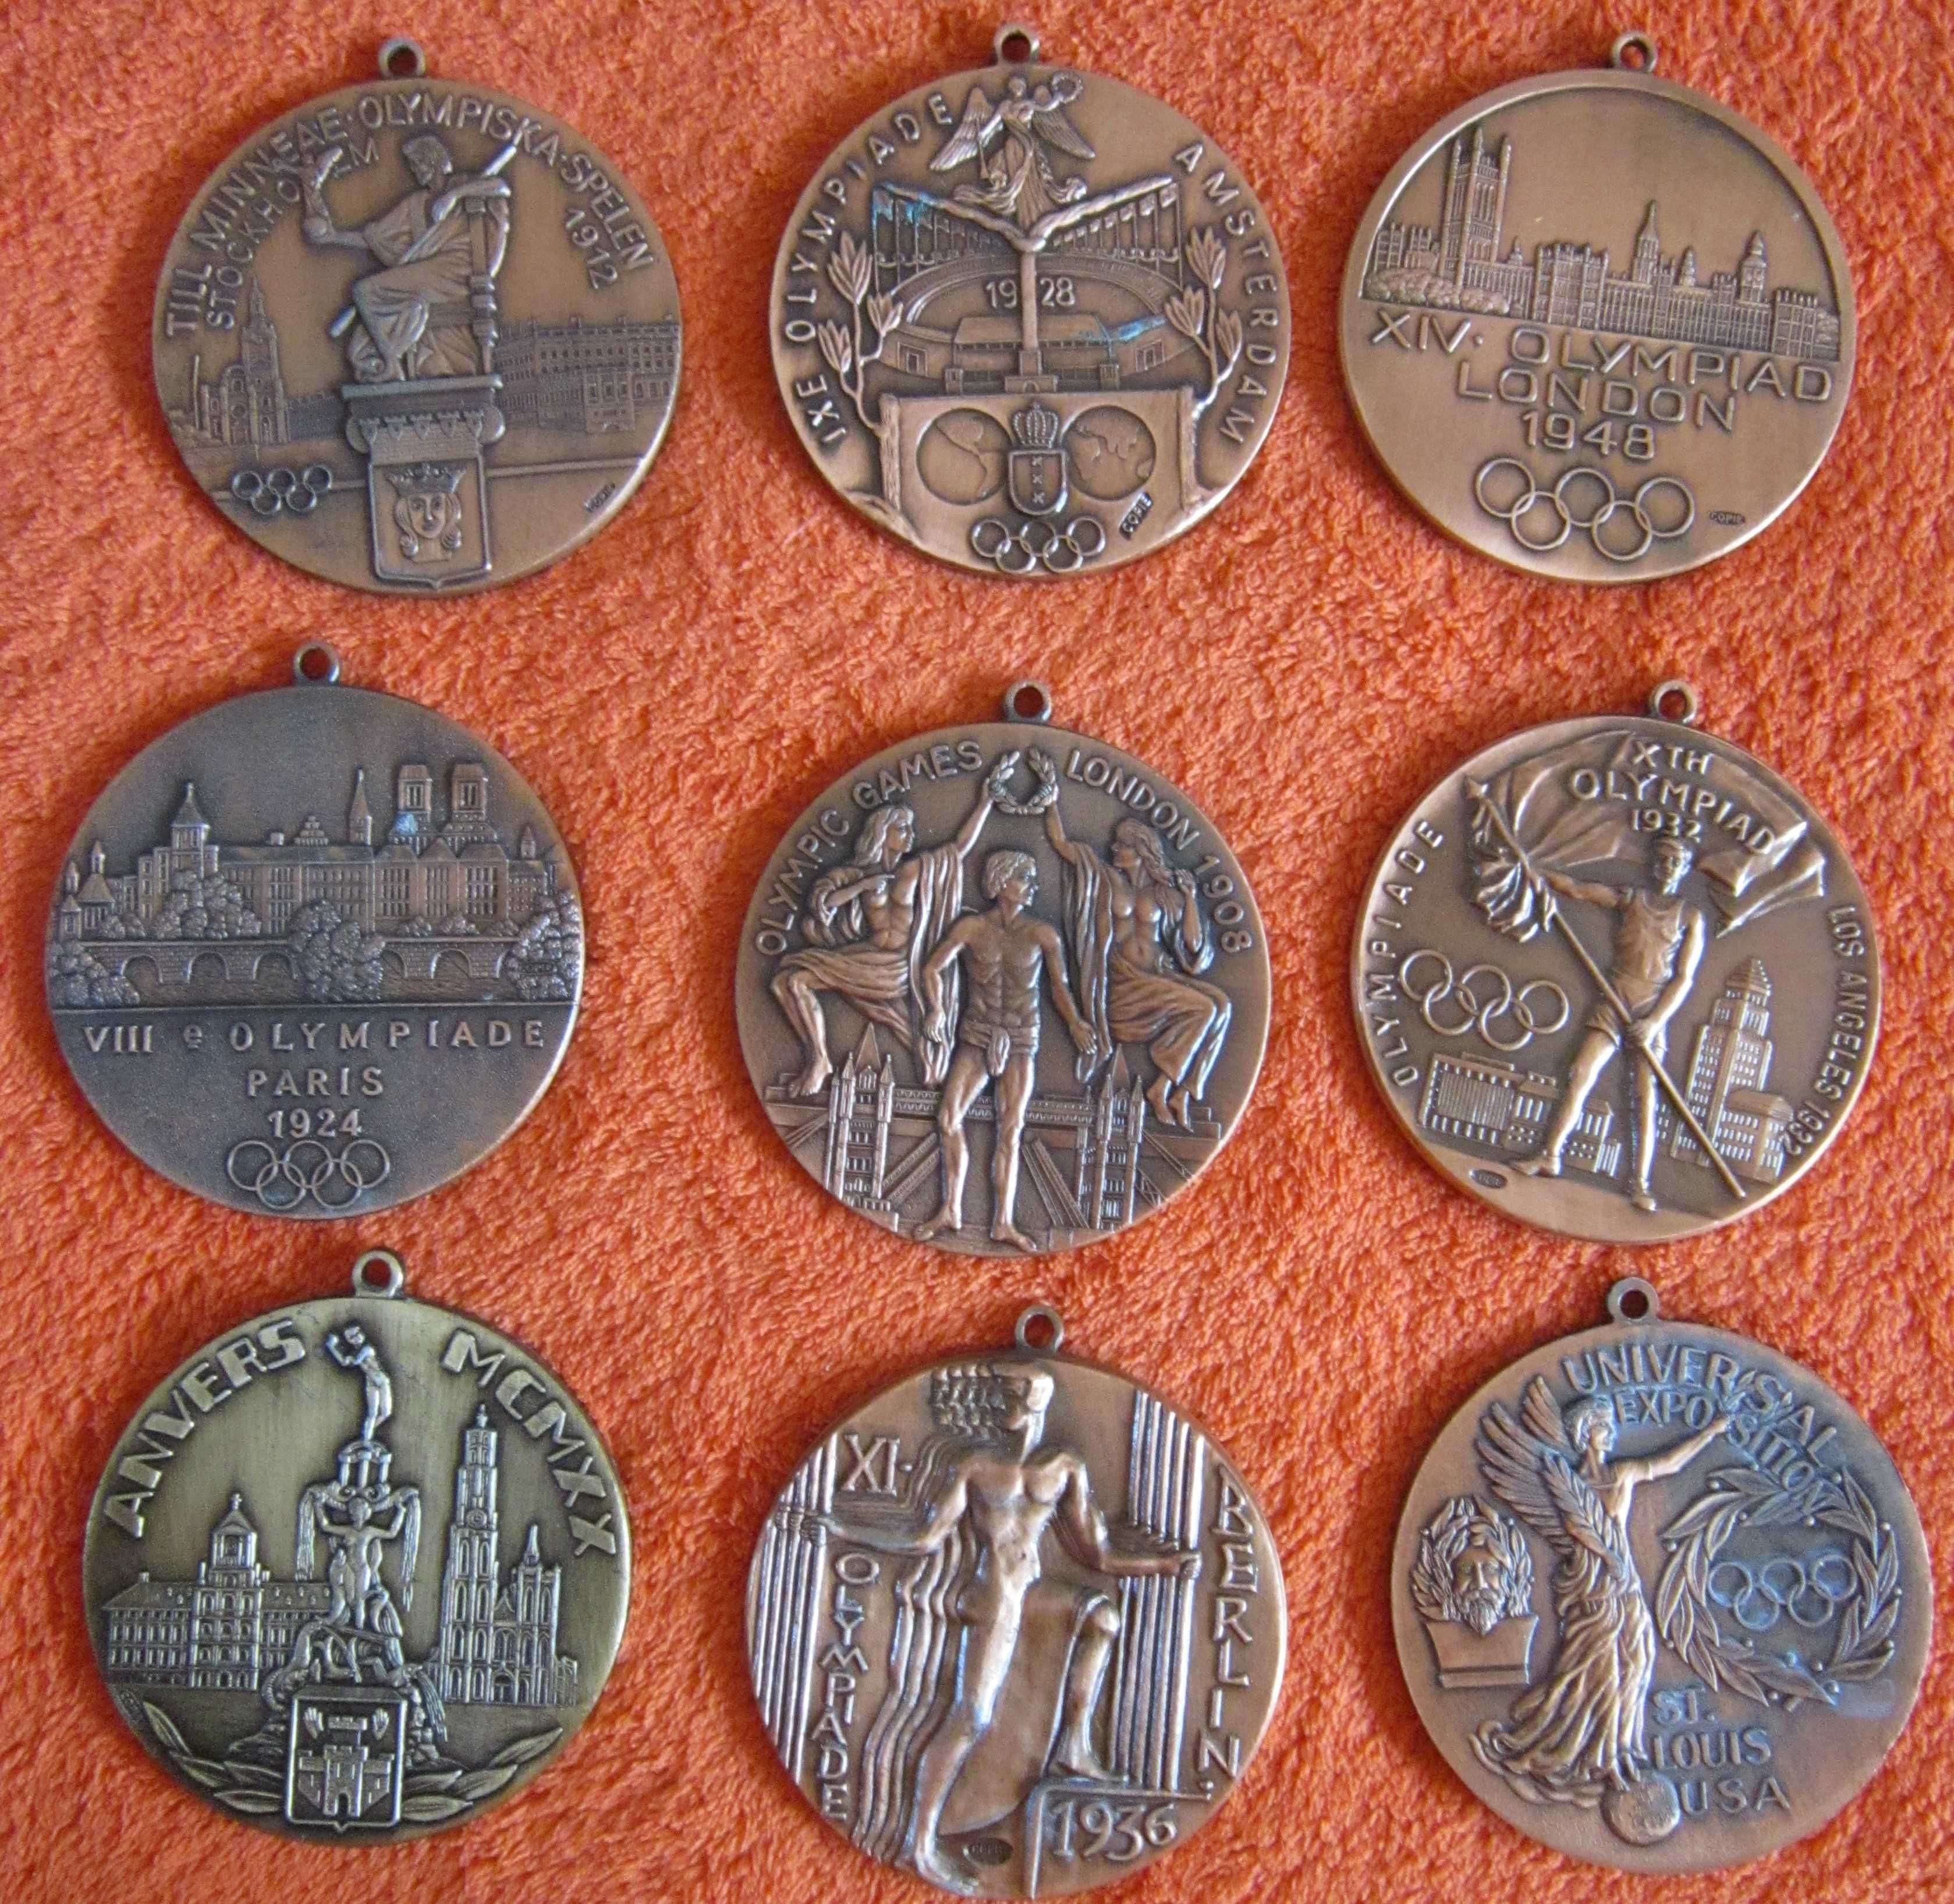 rar medalie olimpica Paris 1924,Suedia 1912,Olanda 1928 bronz colectie